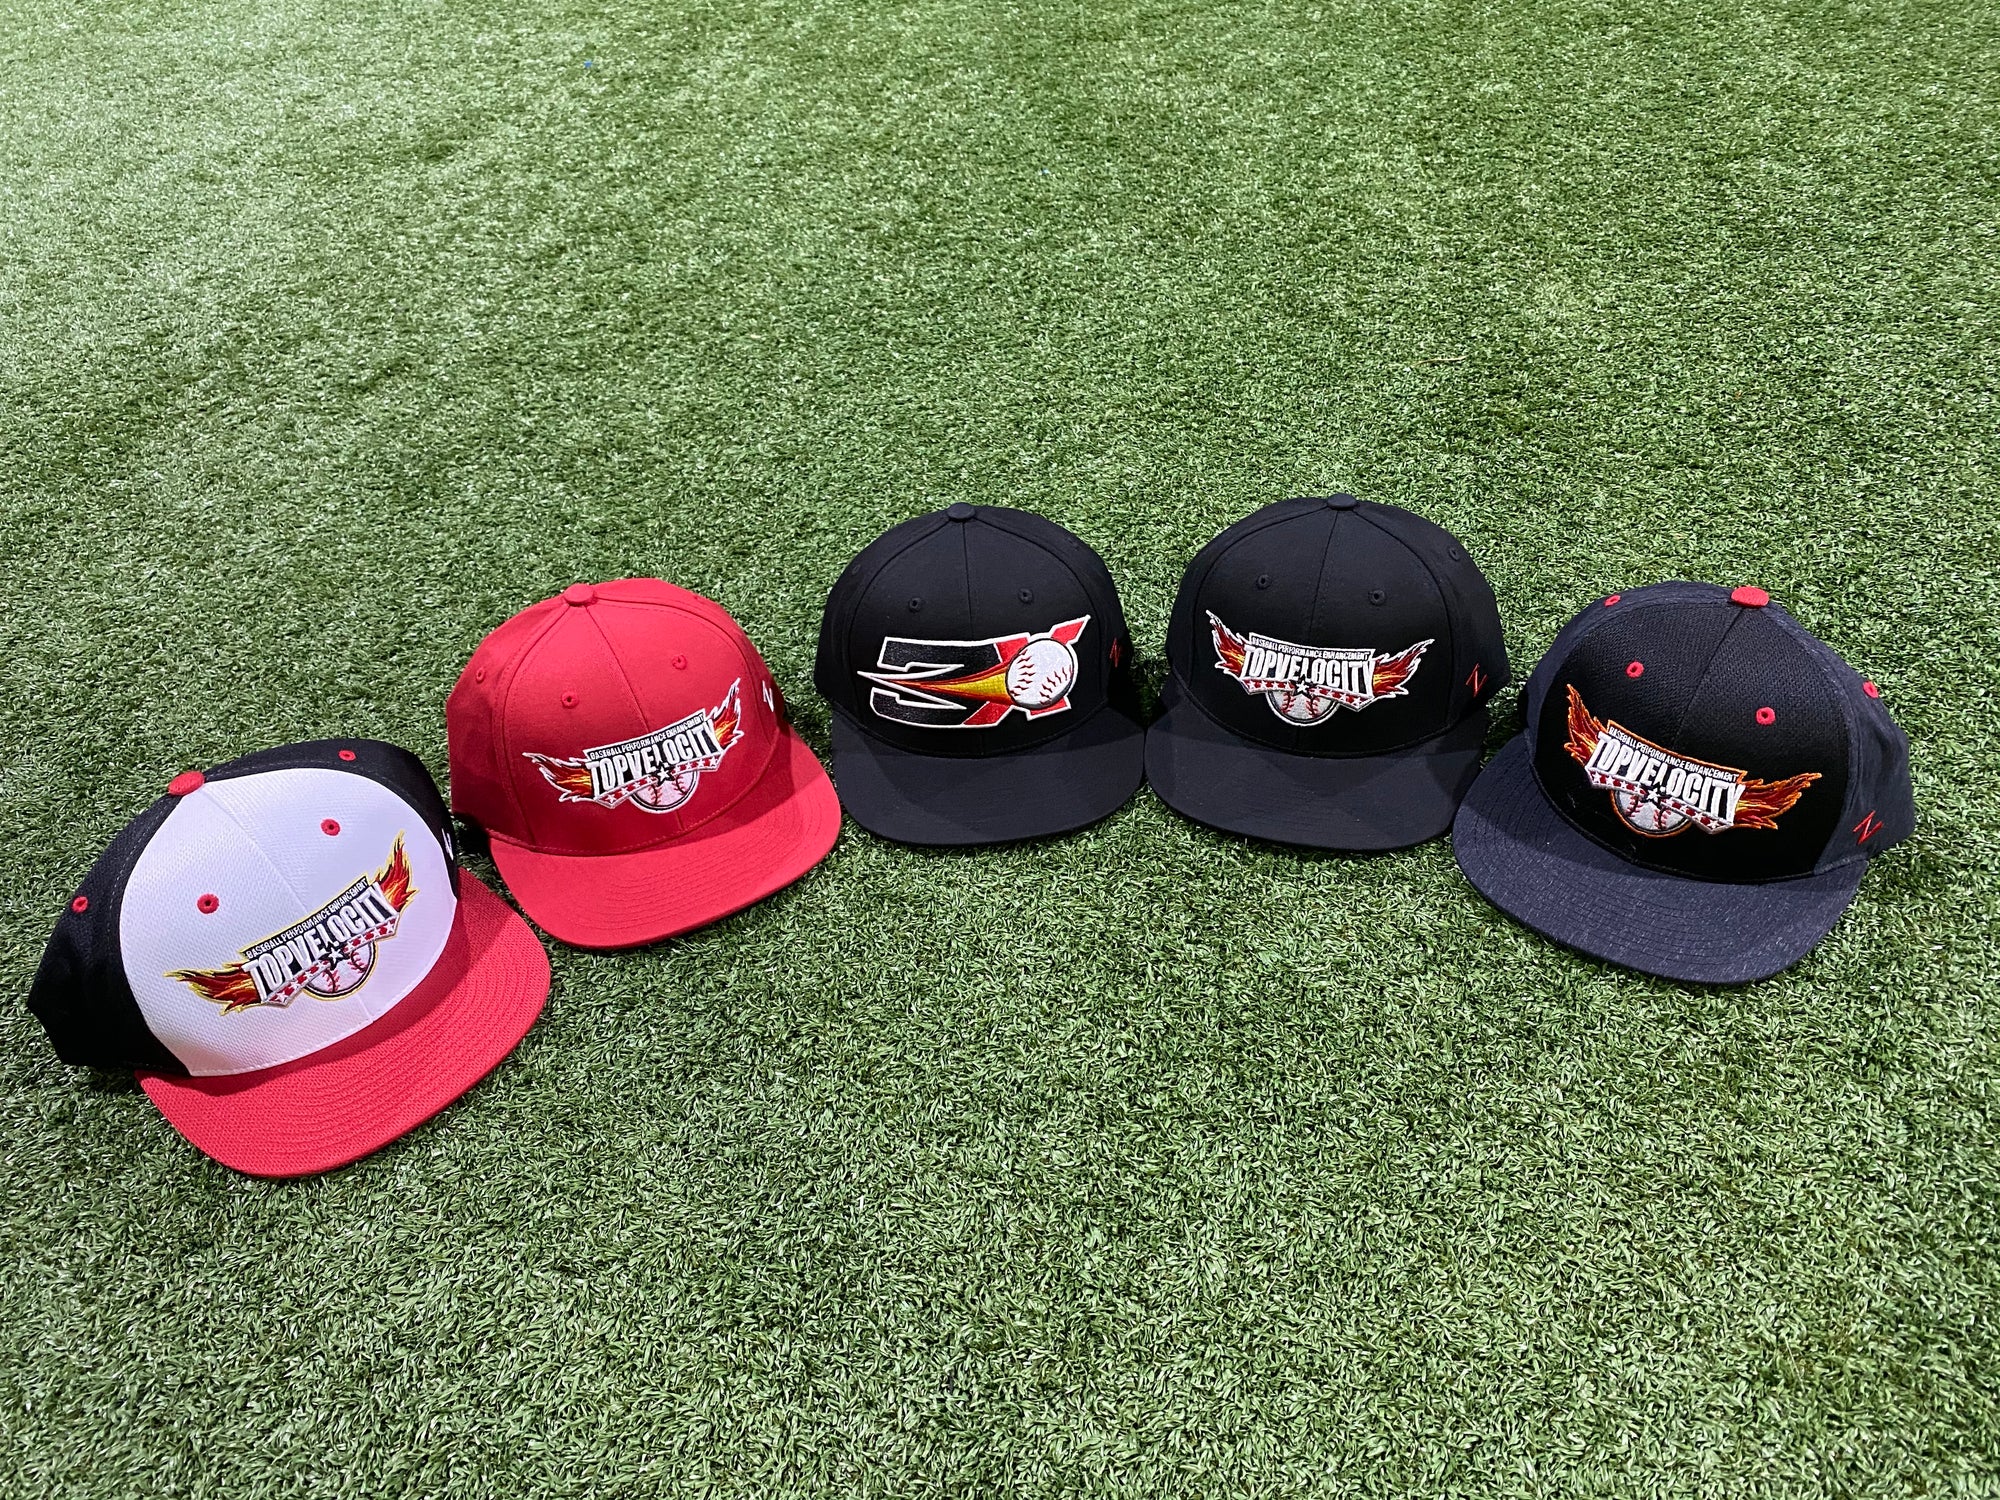 Top V Hats